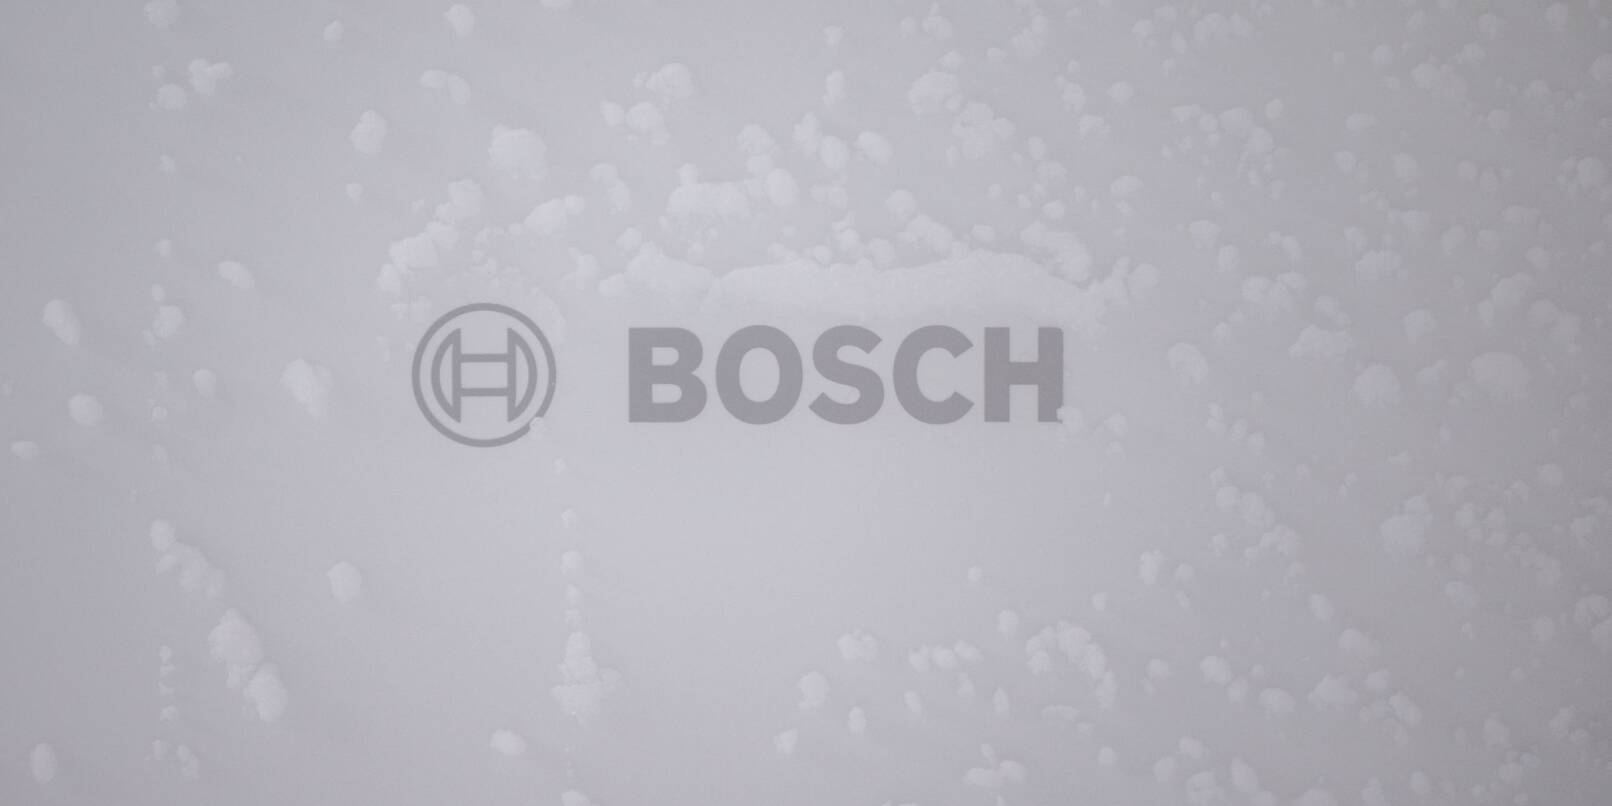 Bosch investiert groß in sein Wärmepumpen-Geschäft.